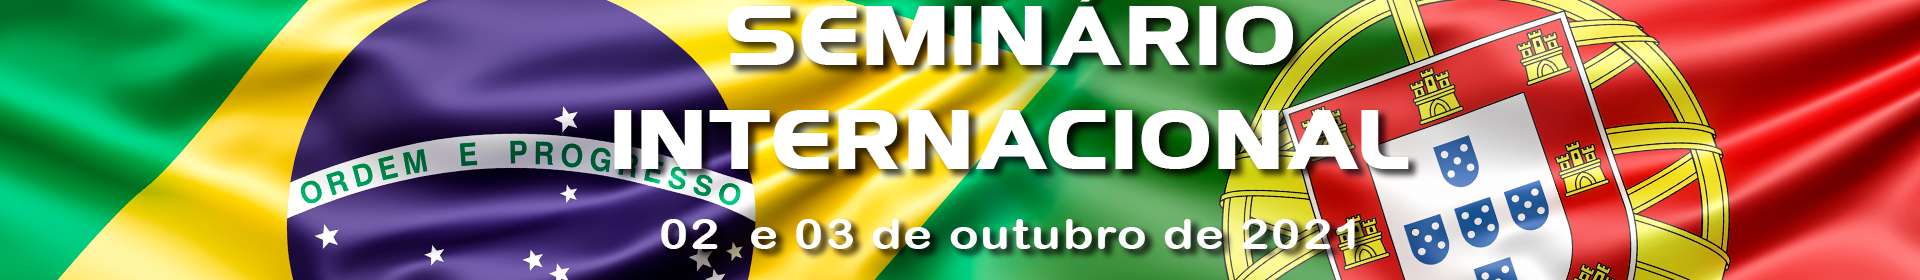 Seminário Internacional da Igreja Cristã Maranata diretamente de Portugal 